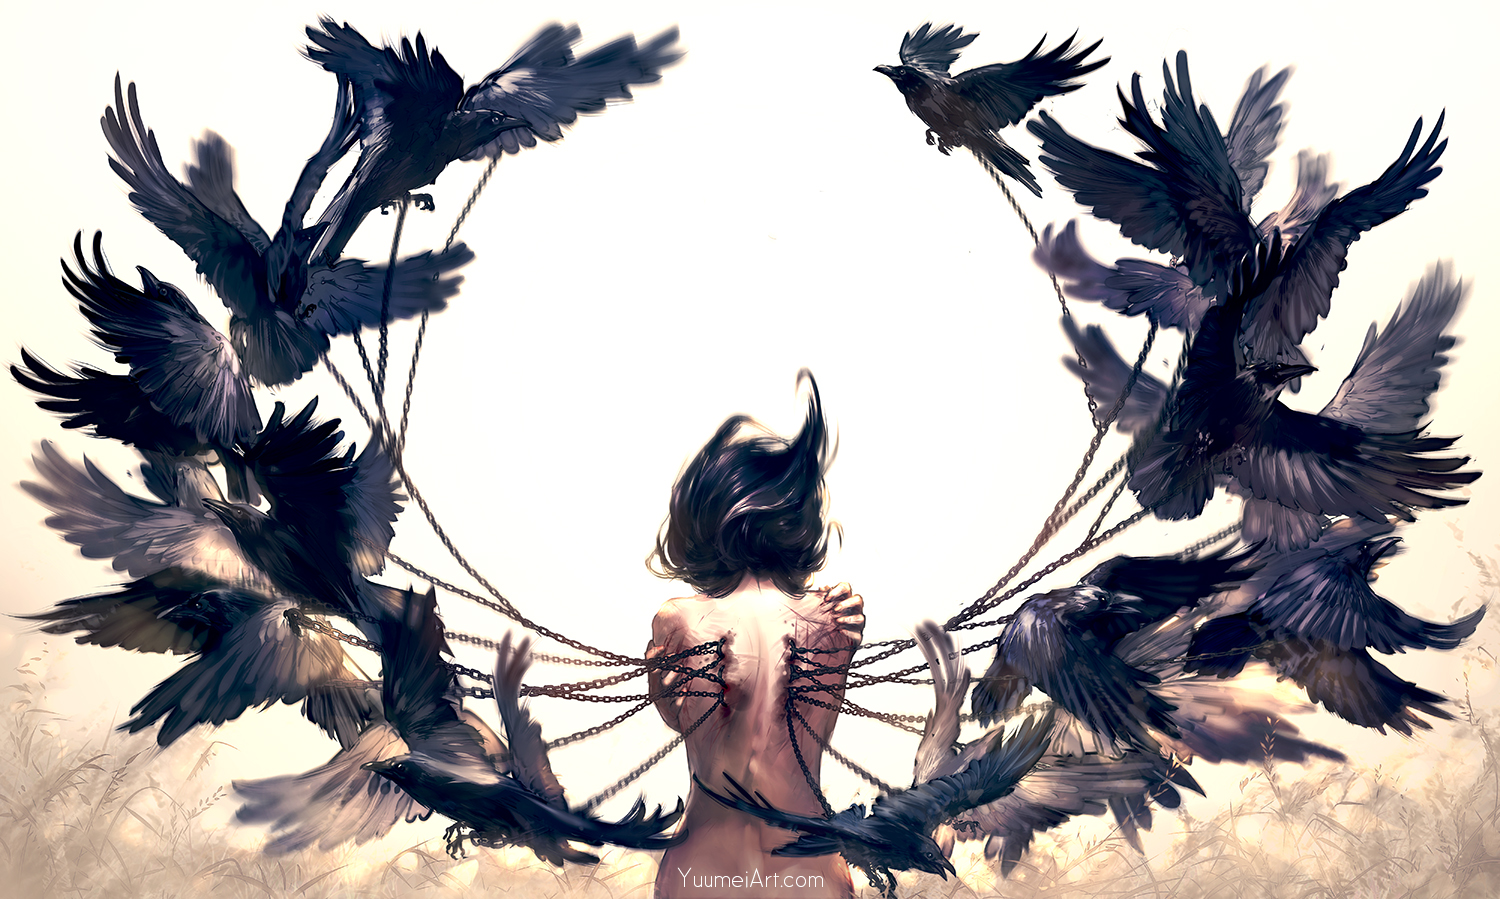 Фото Девушка, из спины которой торчат цепи, прикованные к воронам, by Yuu